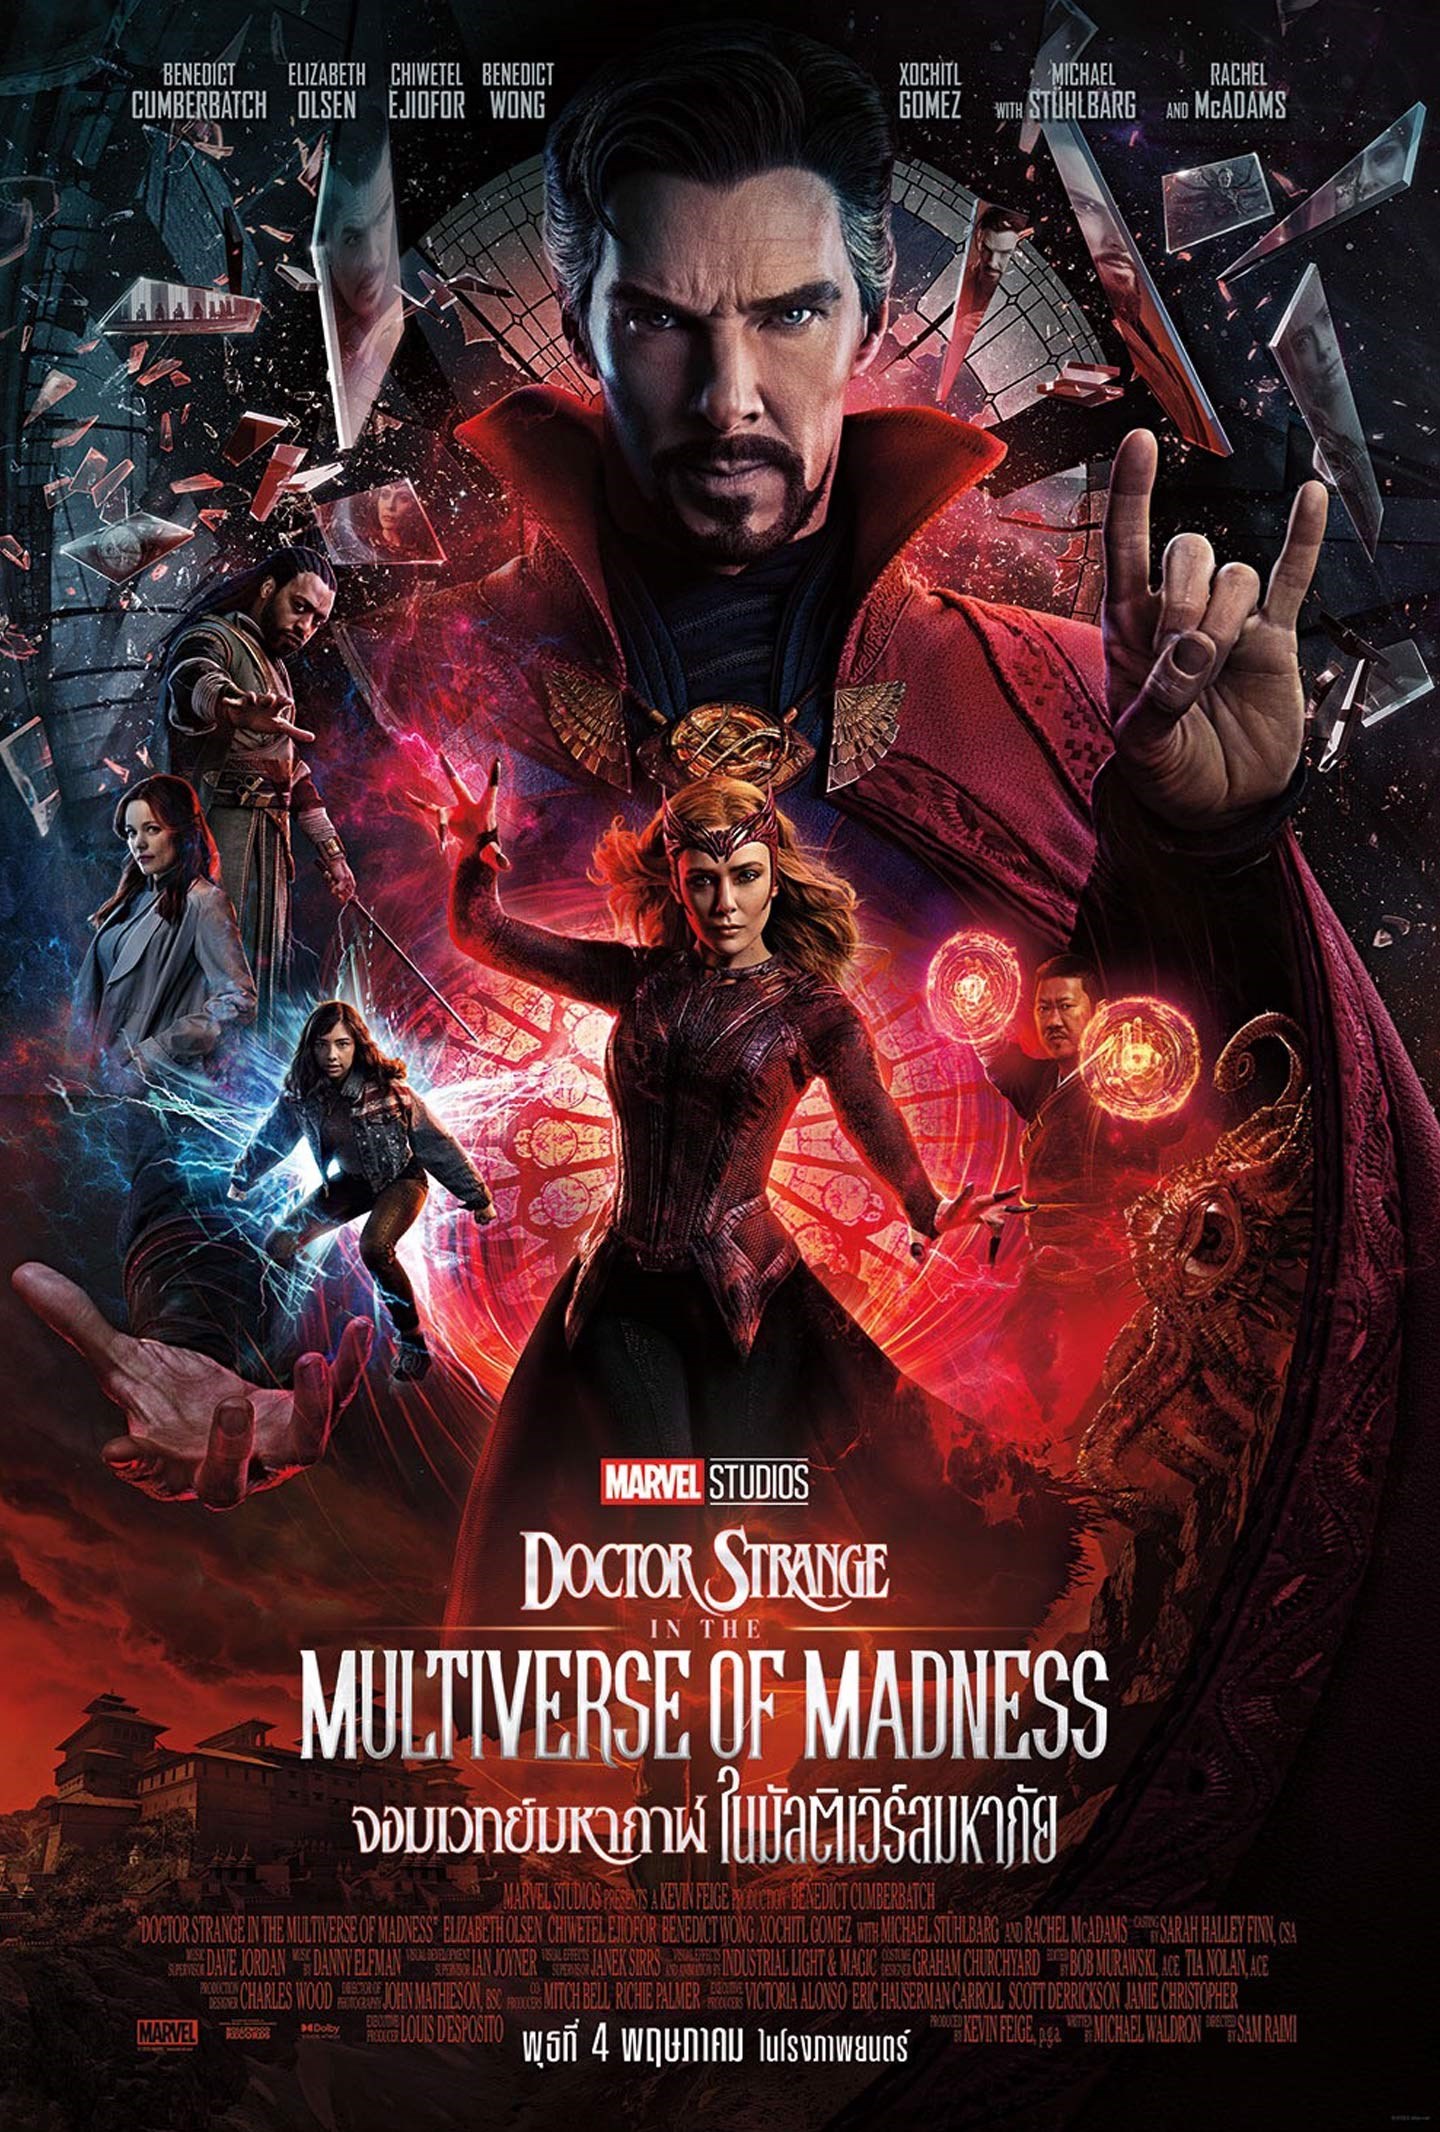 ดูหนังออนไลน์ฟรี Doctor Strange in the Multiverse of Madness (2022) จอมเวทย์มหากาฬ ในมัลติเวิร์สมหาภัย พากย์ไทย